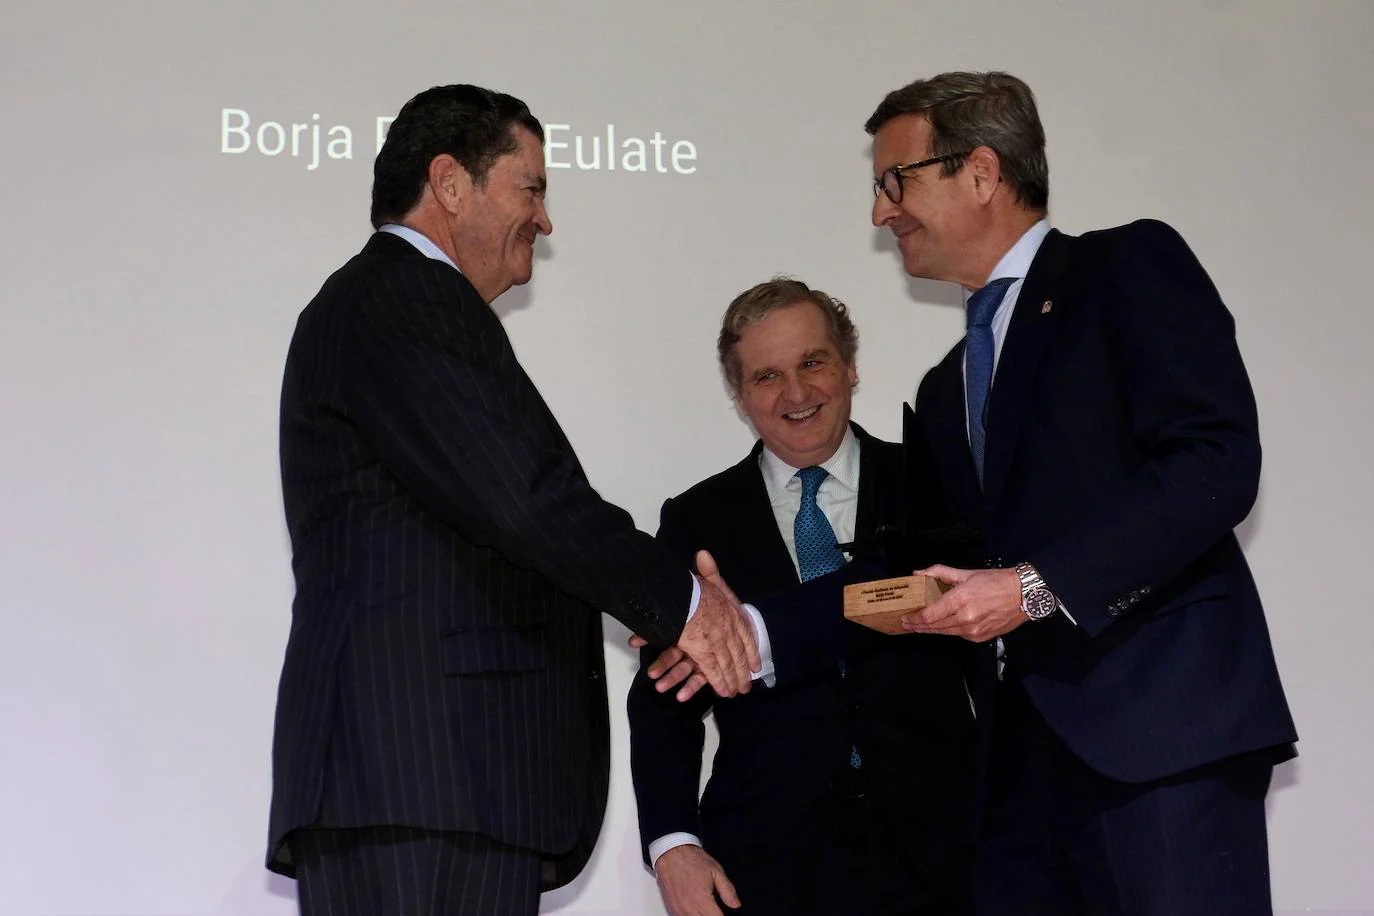 Así ha sido la entrega del premio Gaditano de Adopción a Borja Prado Eulate en Cádiz